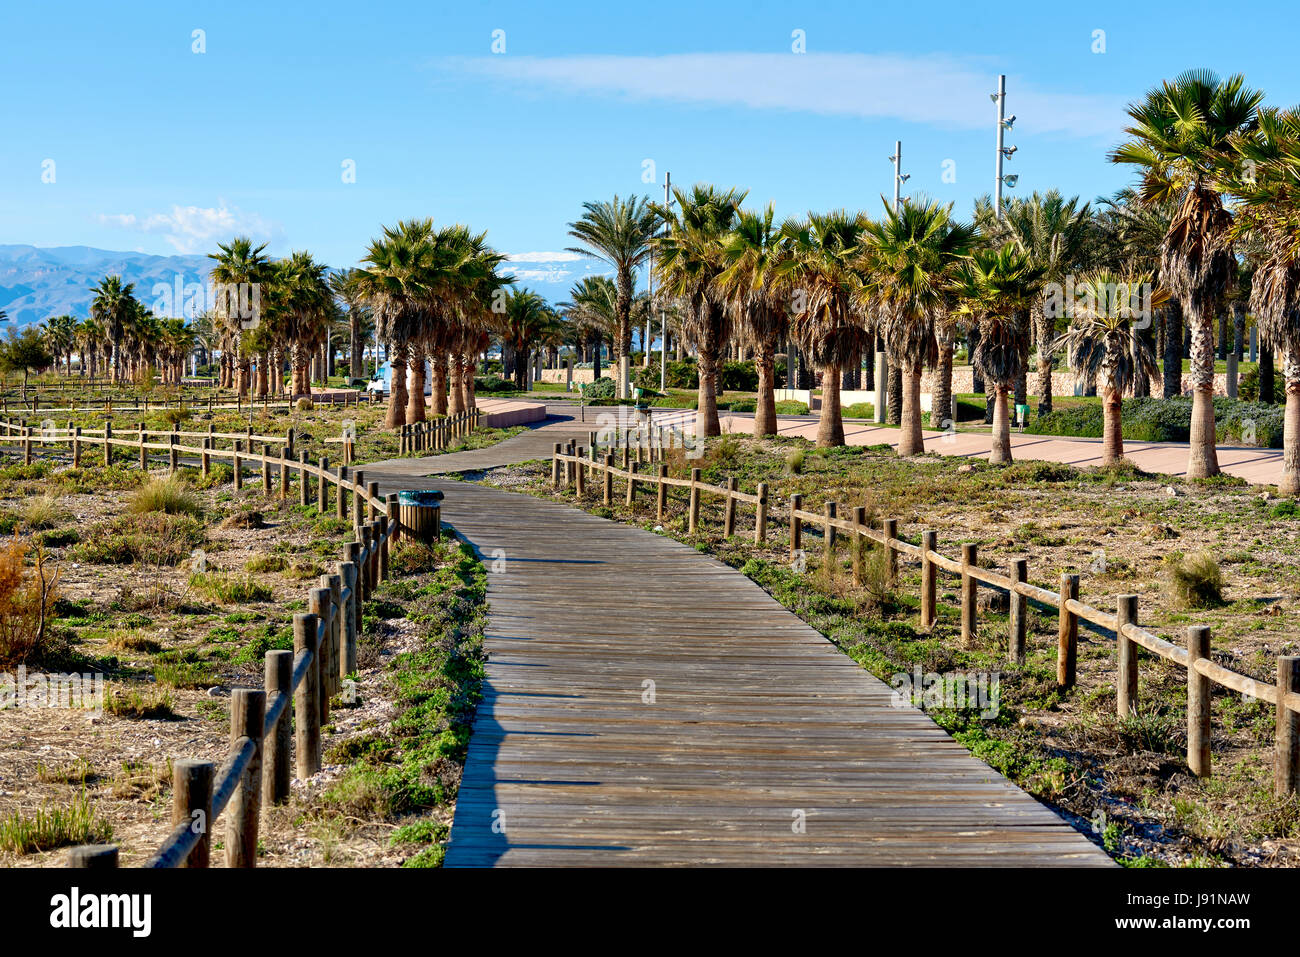 Passerelle piétonne bordée de palmiers dans un parc de Retamar. Province d'Almeria. Espagne Banque D'Images